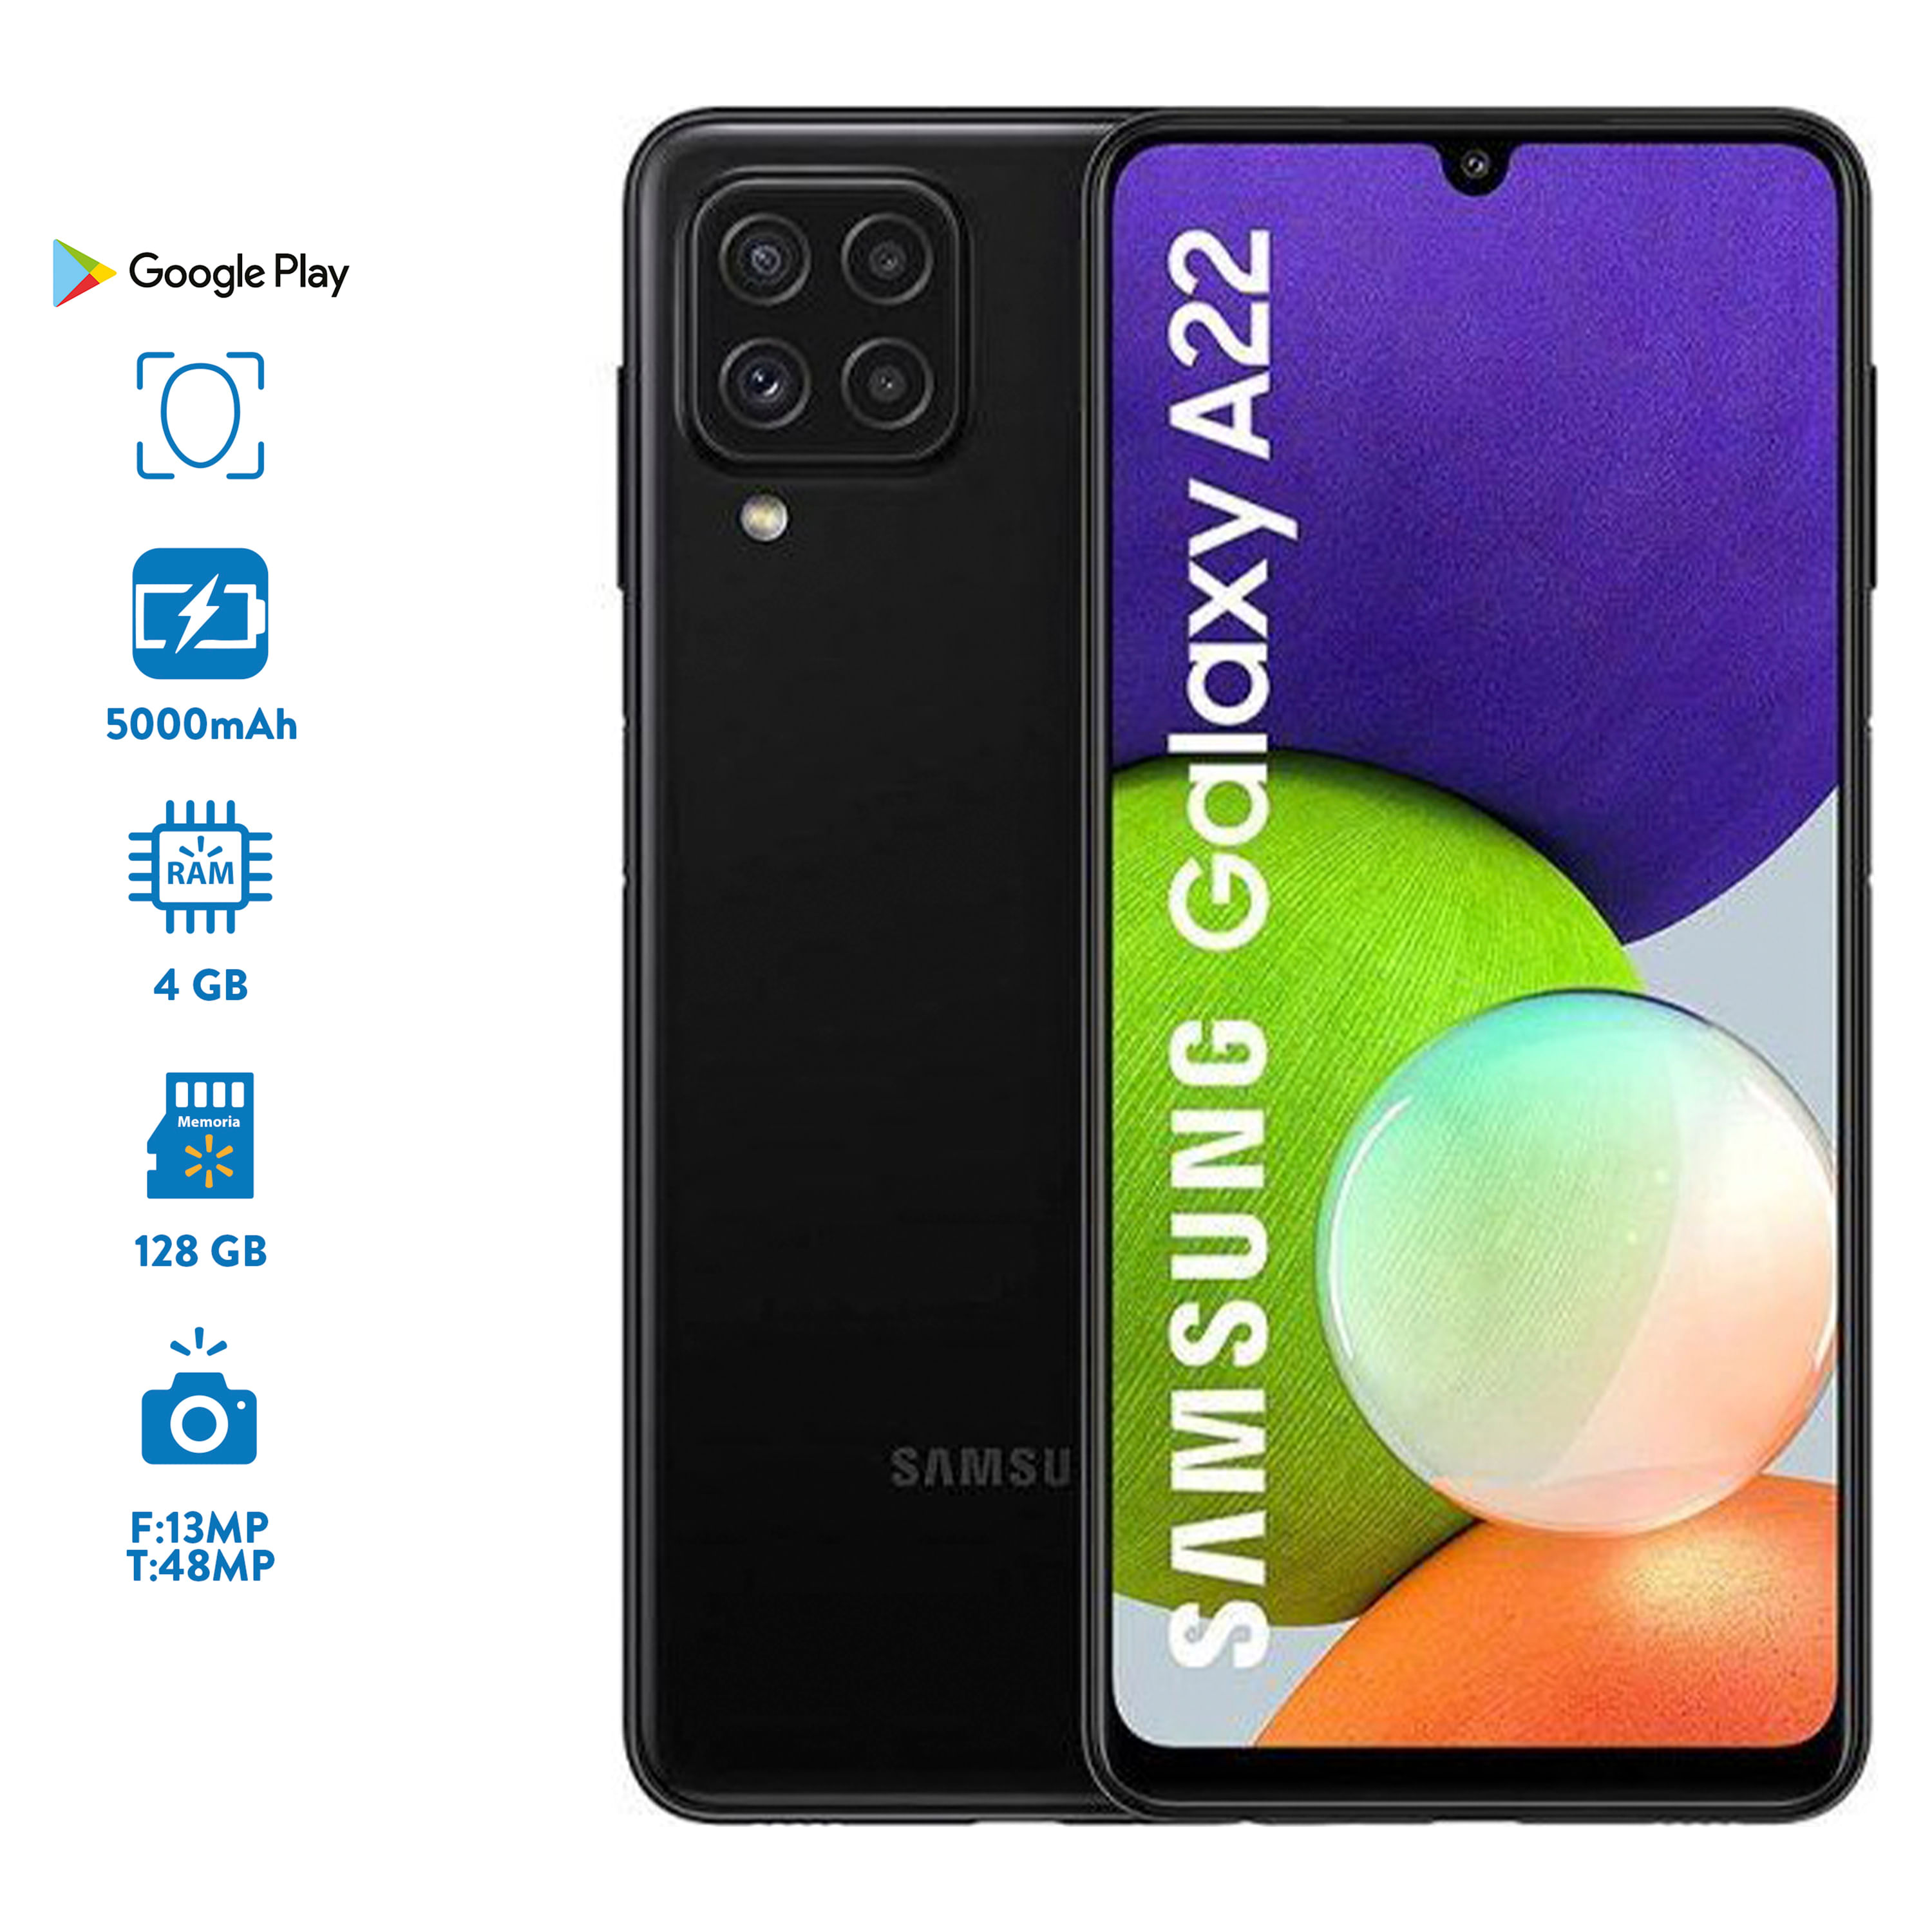 Comprar Xiaomi Redmi 9A 32GB  Walmart Guatemala - Maxi Despensa